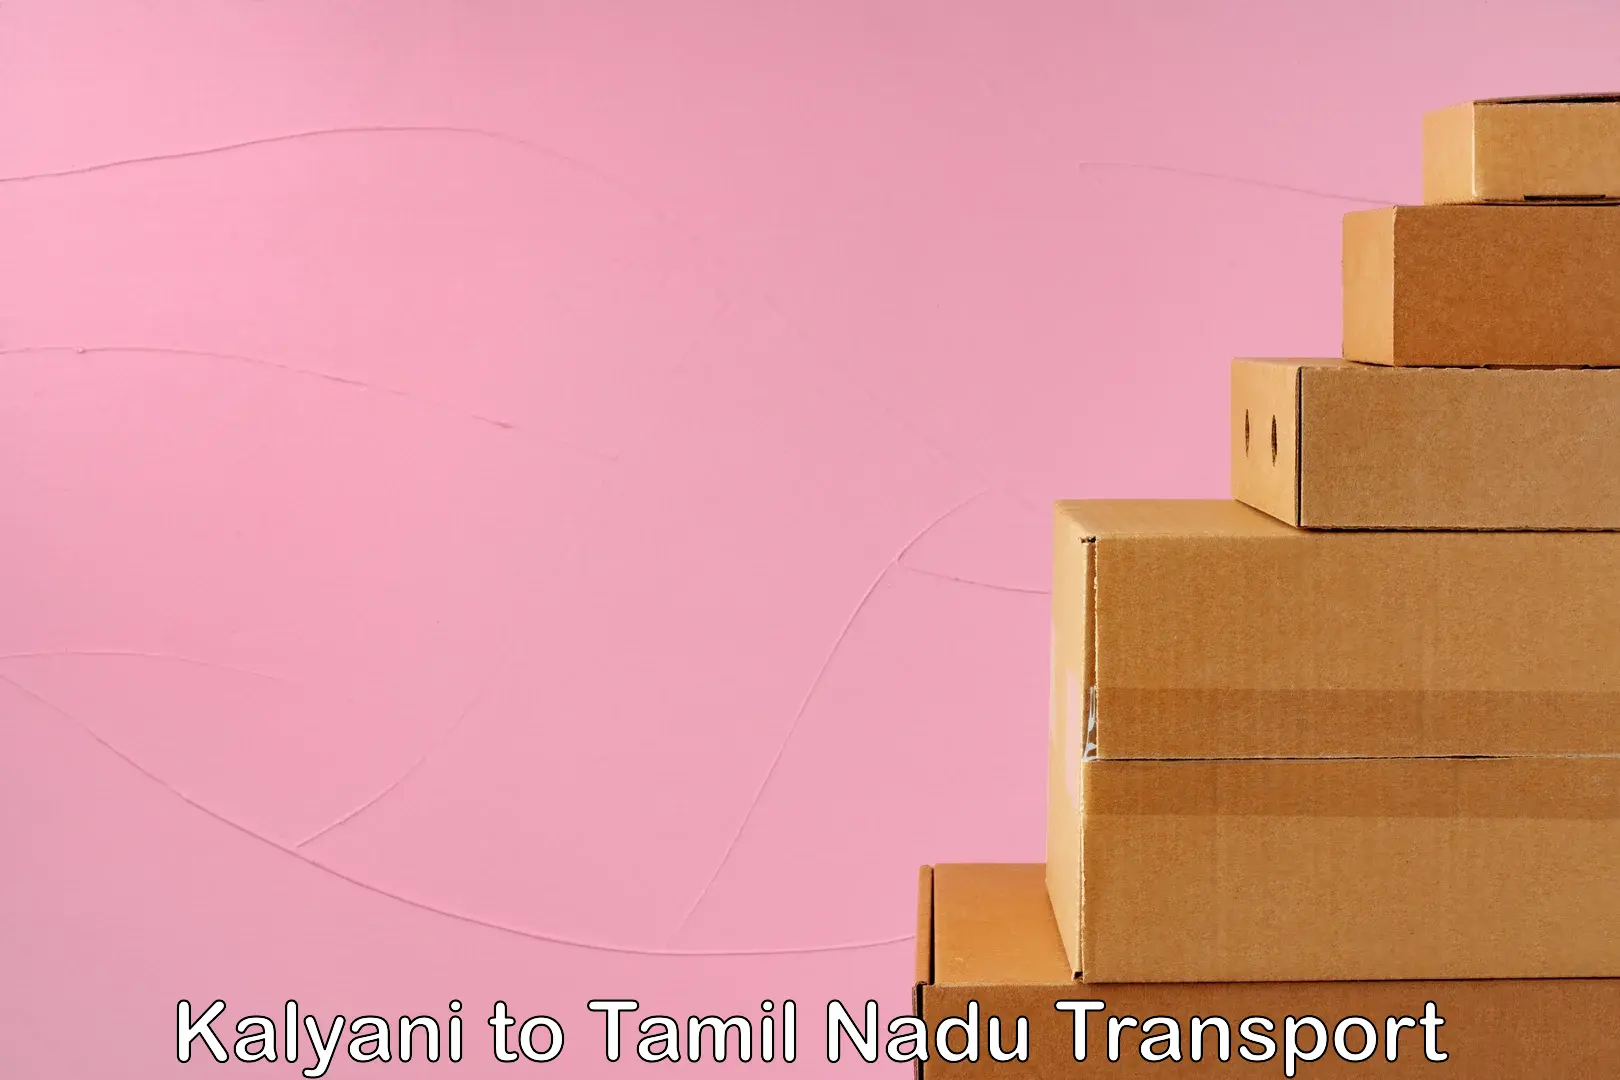 Nearest transport service Kalyani to Tamil Nadu